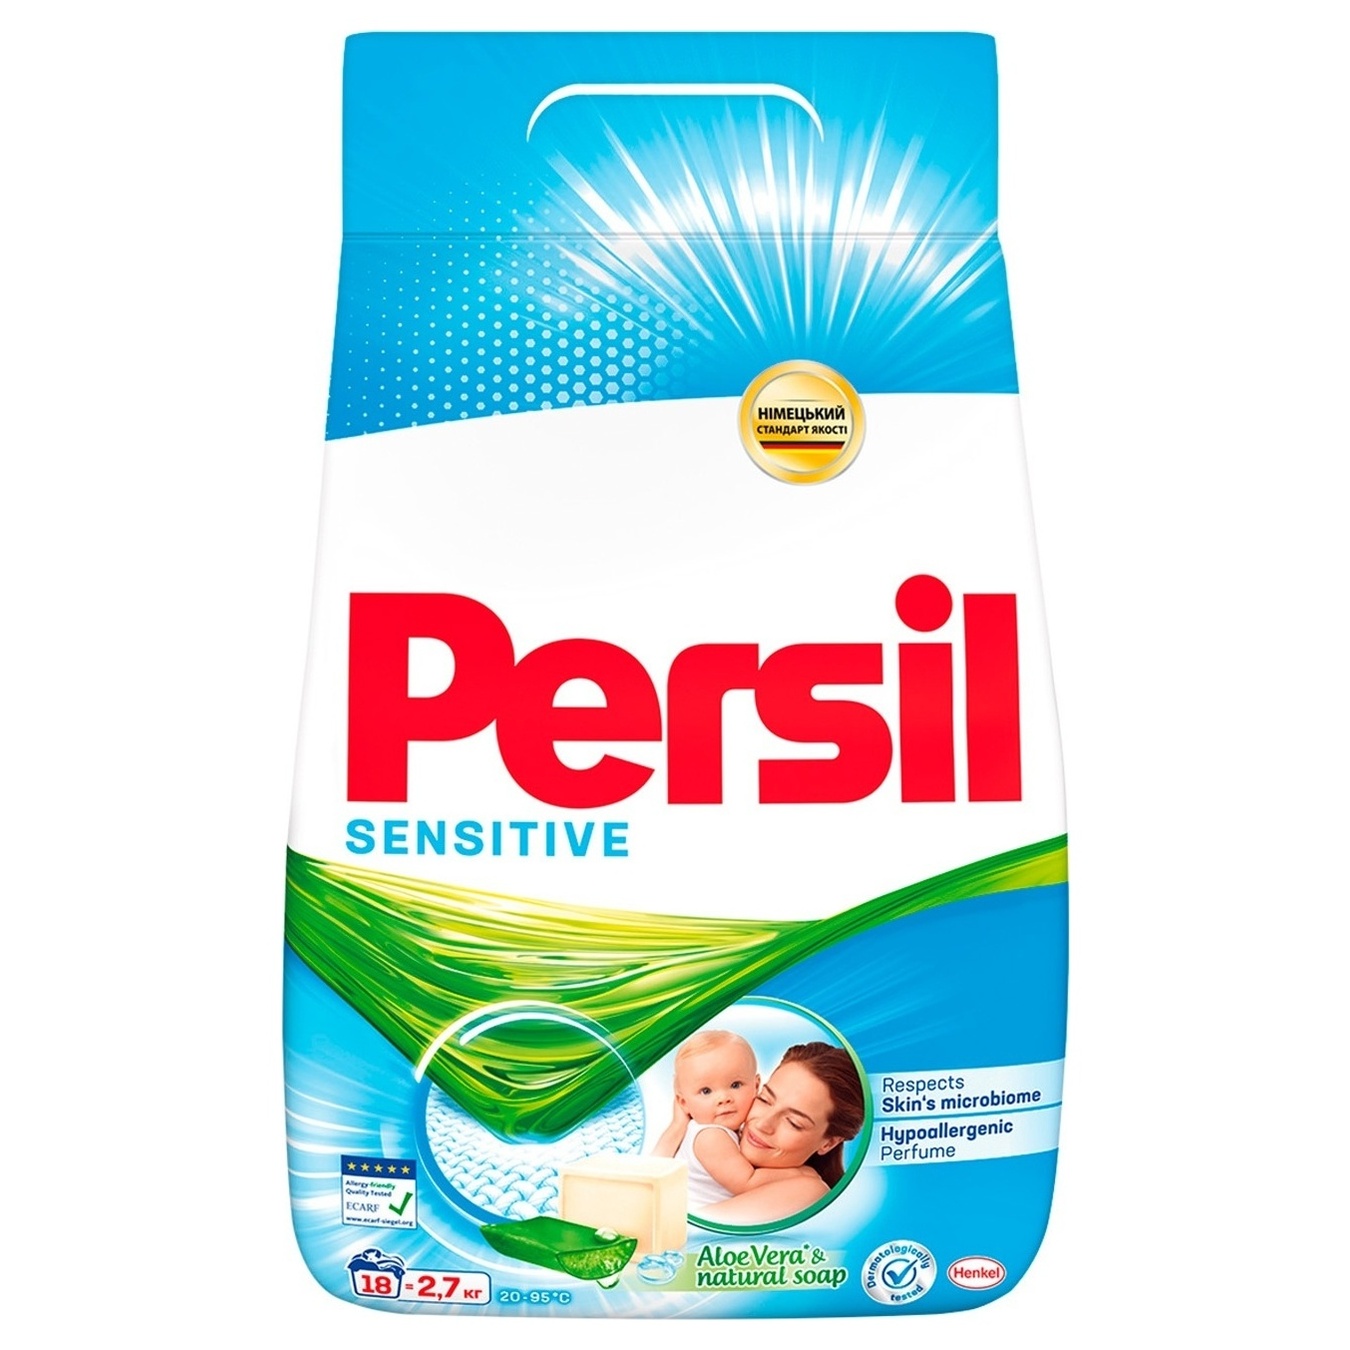 Washing powder Persil Sensitive machine 2.7 kg